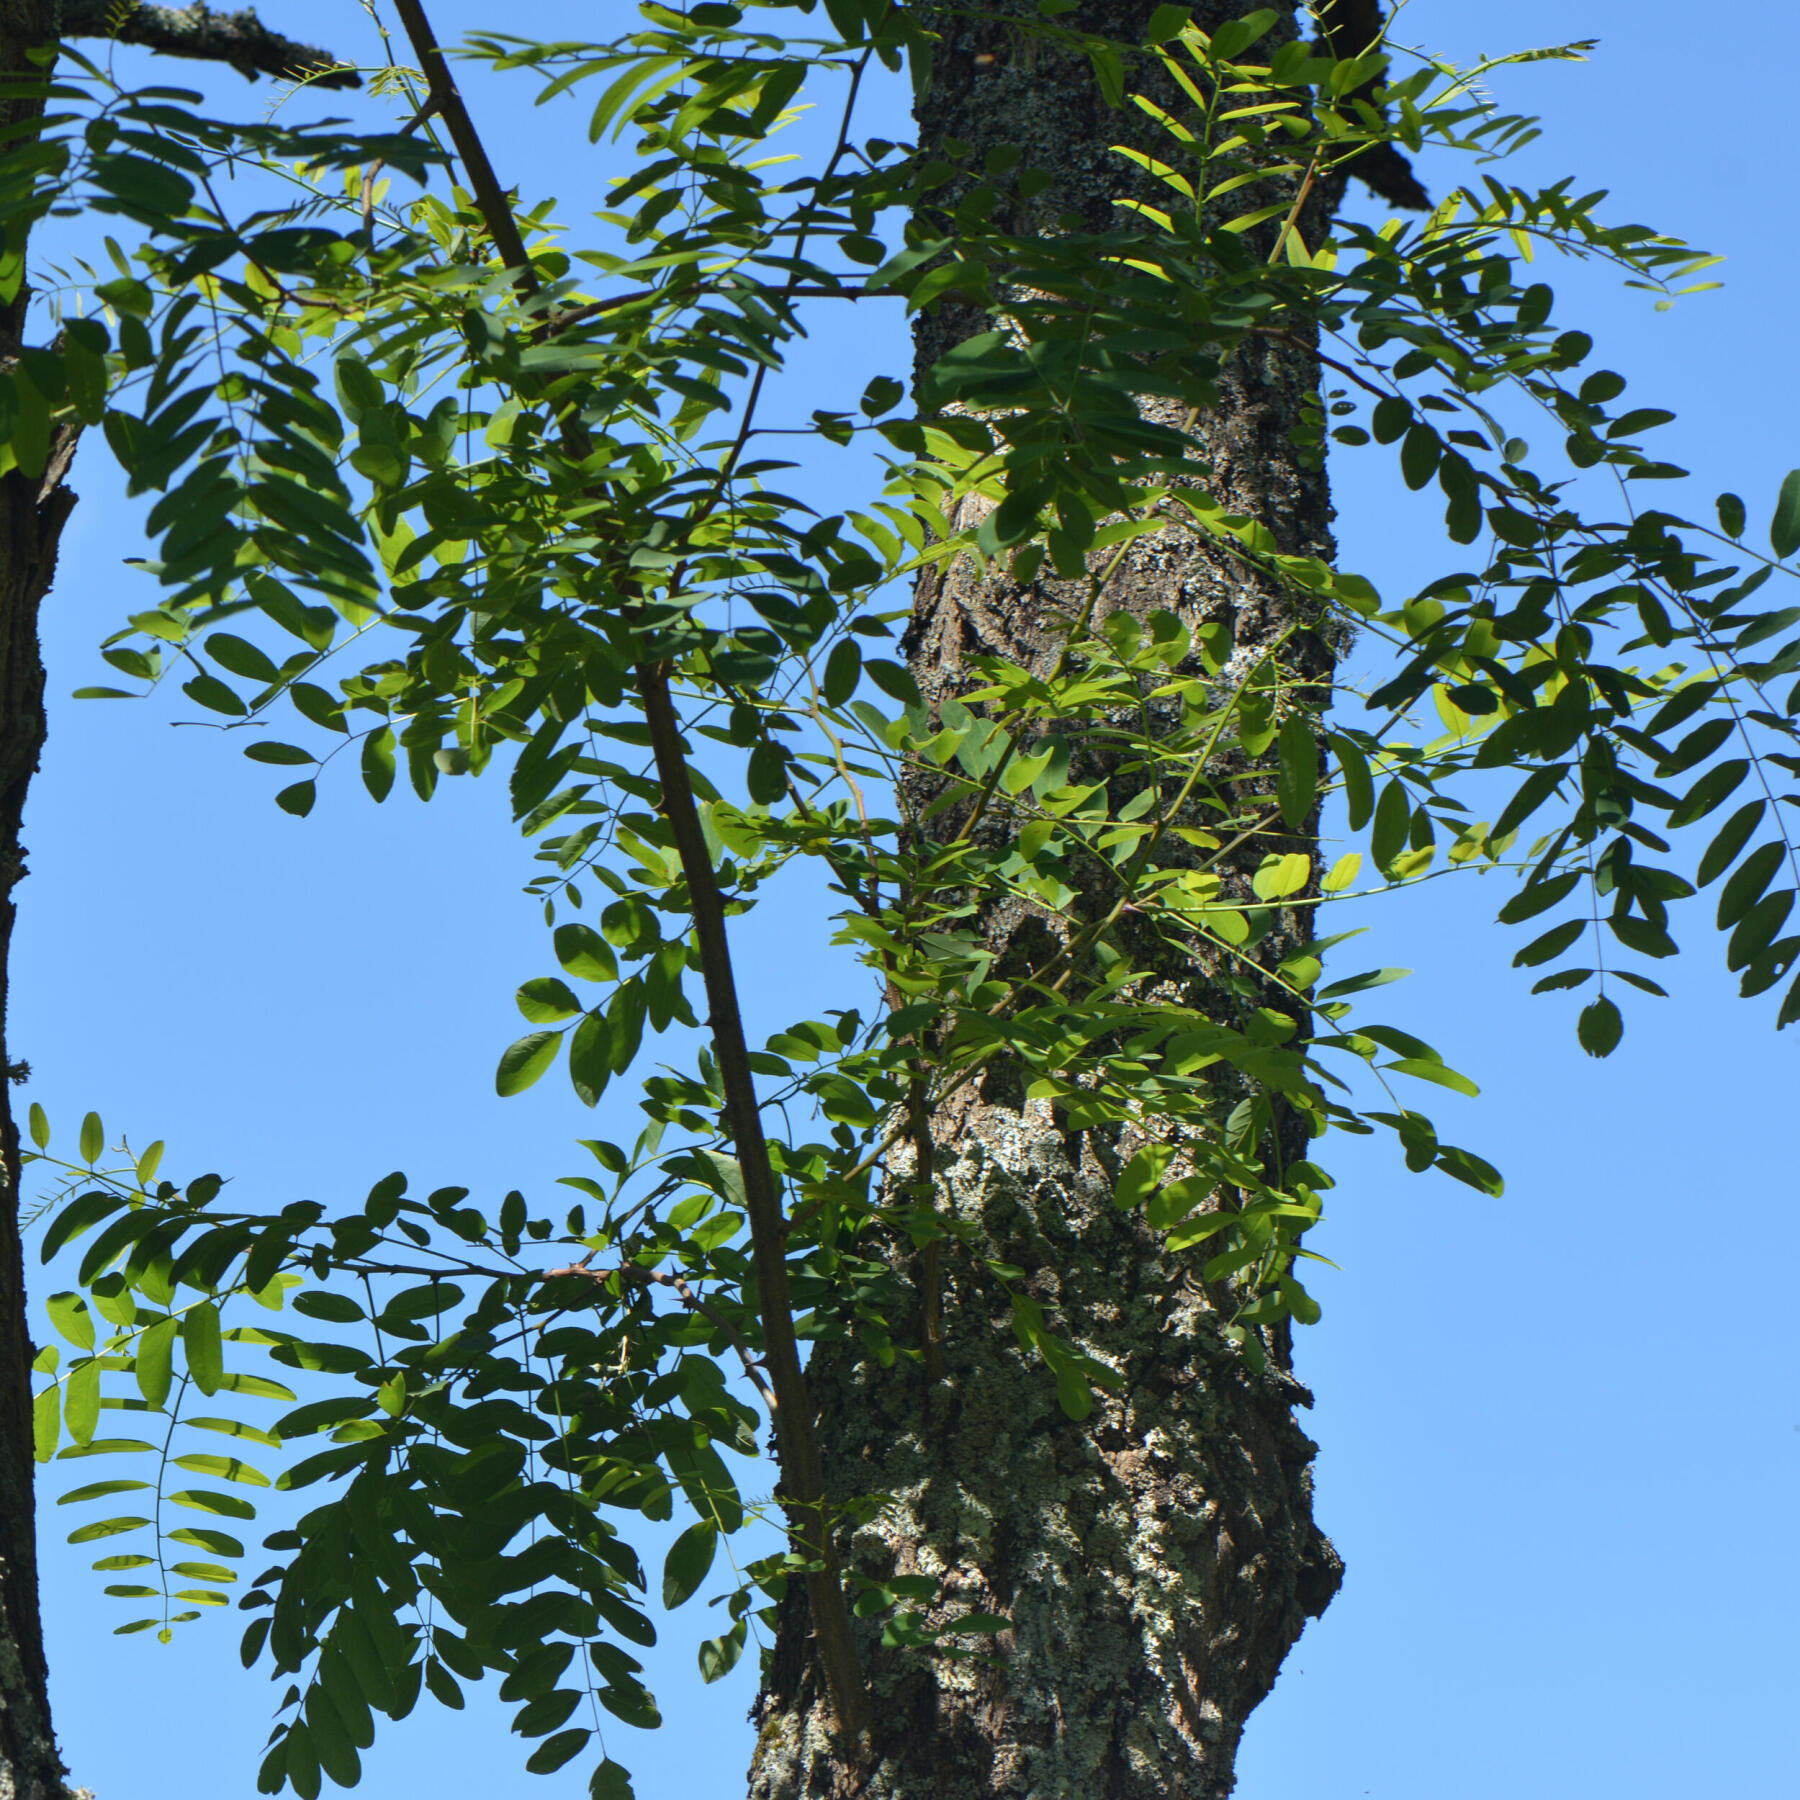 le robinier faux acacia (ou robinia pseudoacaci) et son écorce crevassée